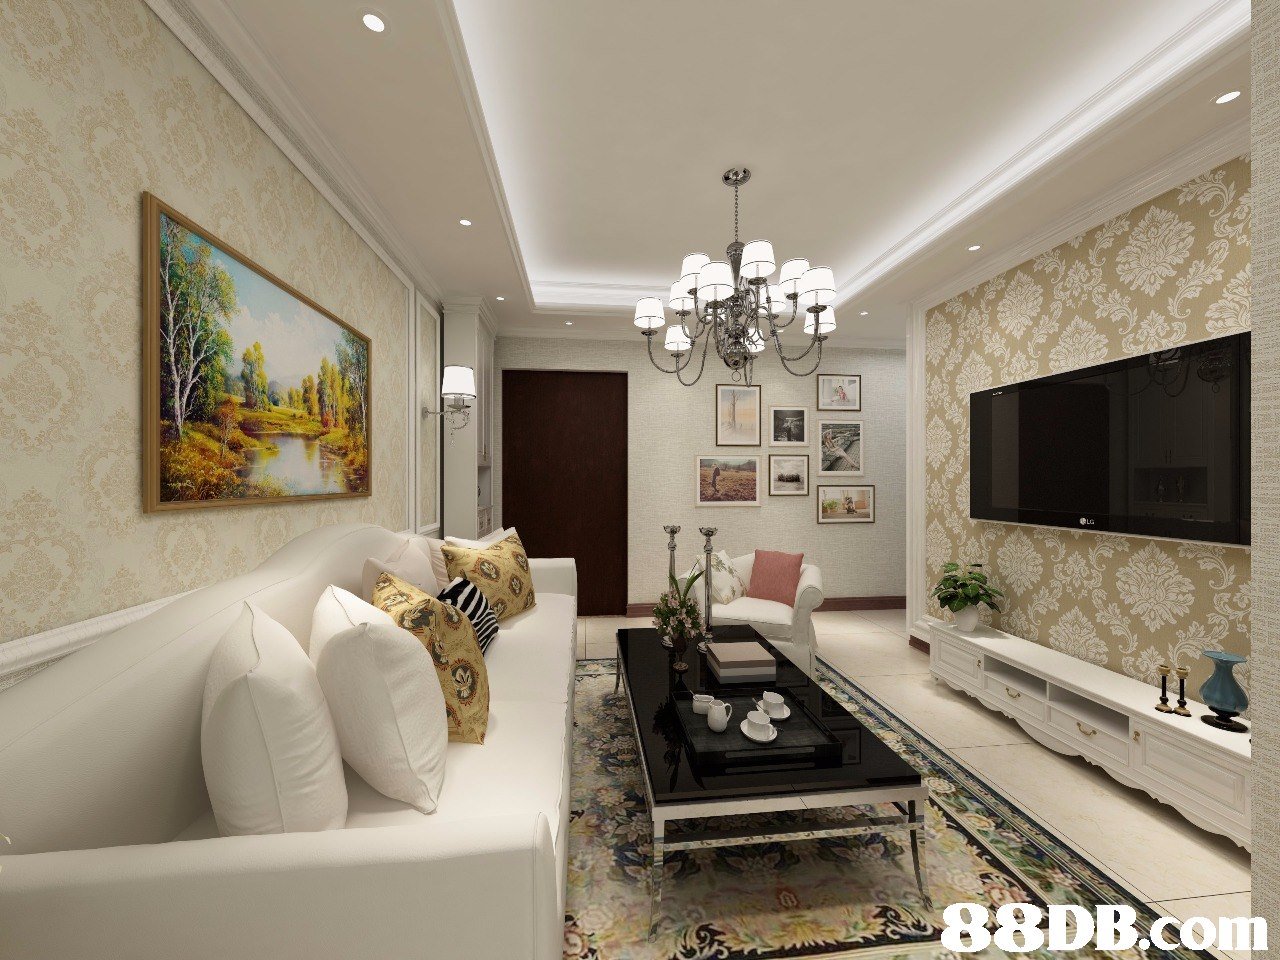 8DB Com,living room,interior design,property,ceiling,room